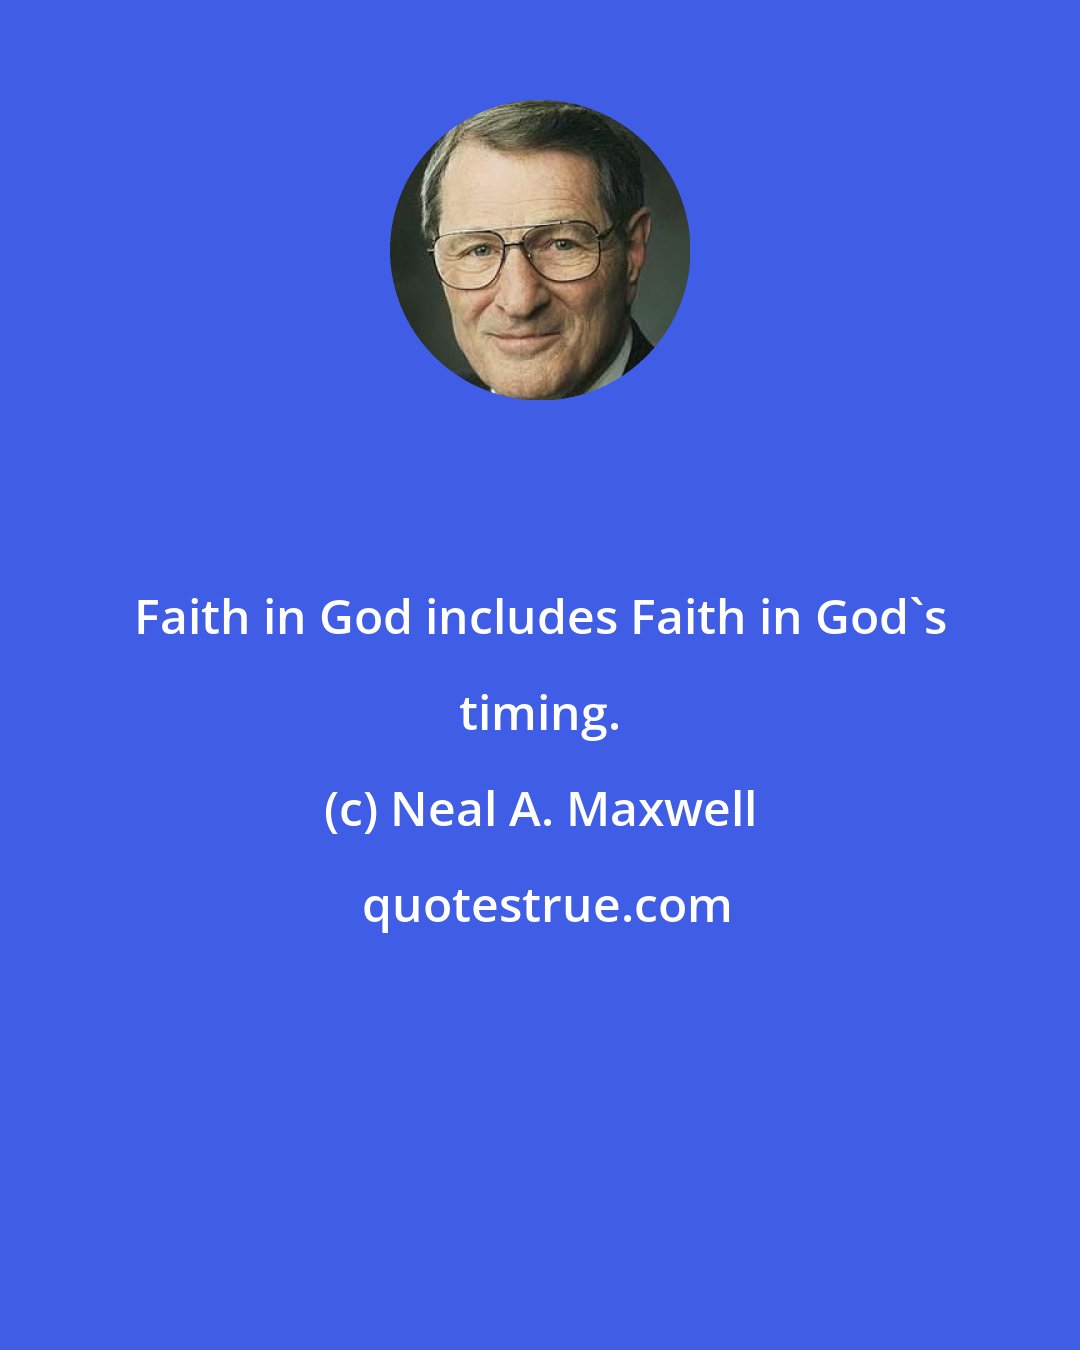 Neal A. Maxwell: Faith in God includes Faith in God's timing.